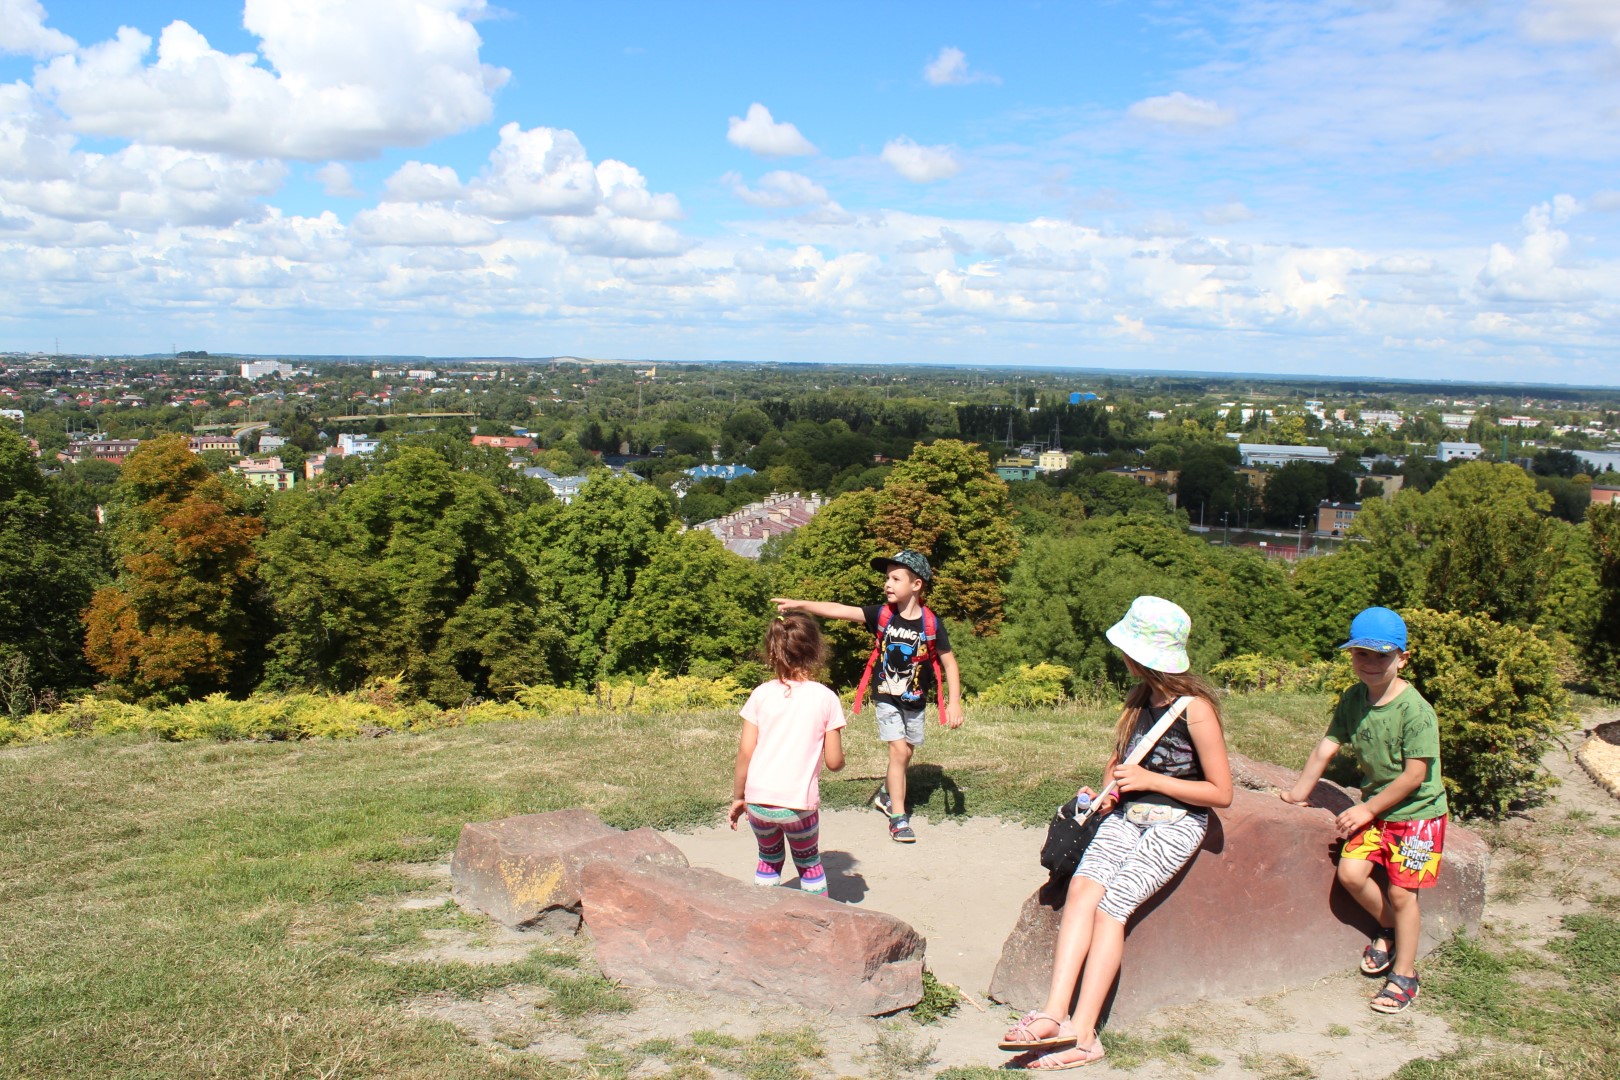 Słoneczny dzień. W otoczeniu zieleni, na górce chełmskiej grupa dzieci siedzi na kamieniach i obserwują otoczenie.